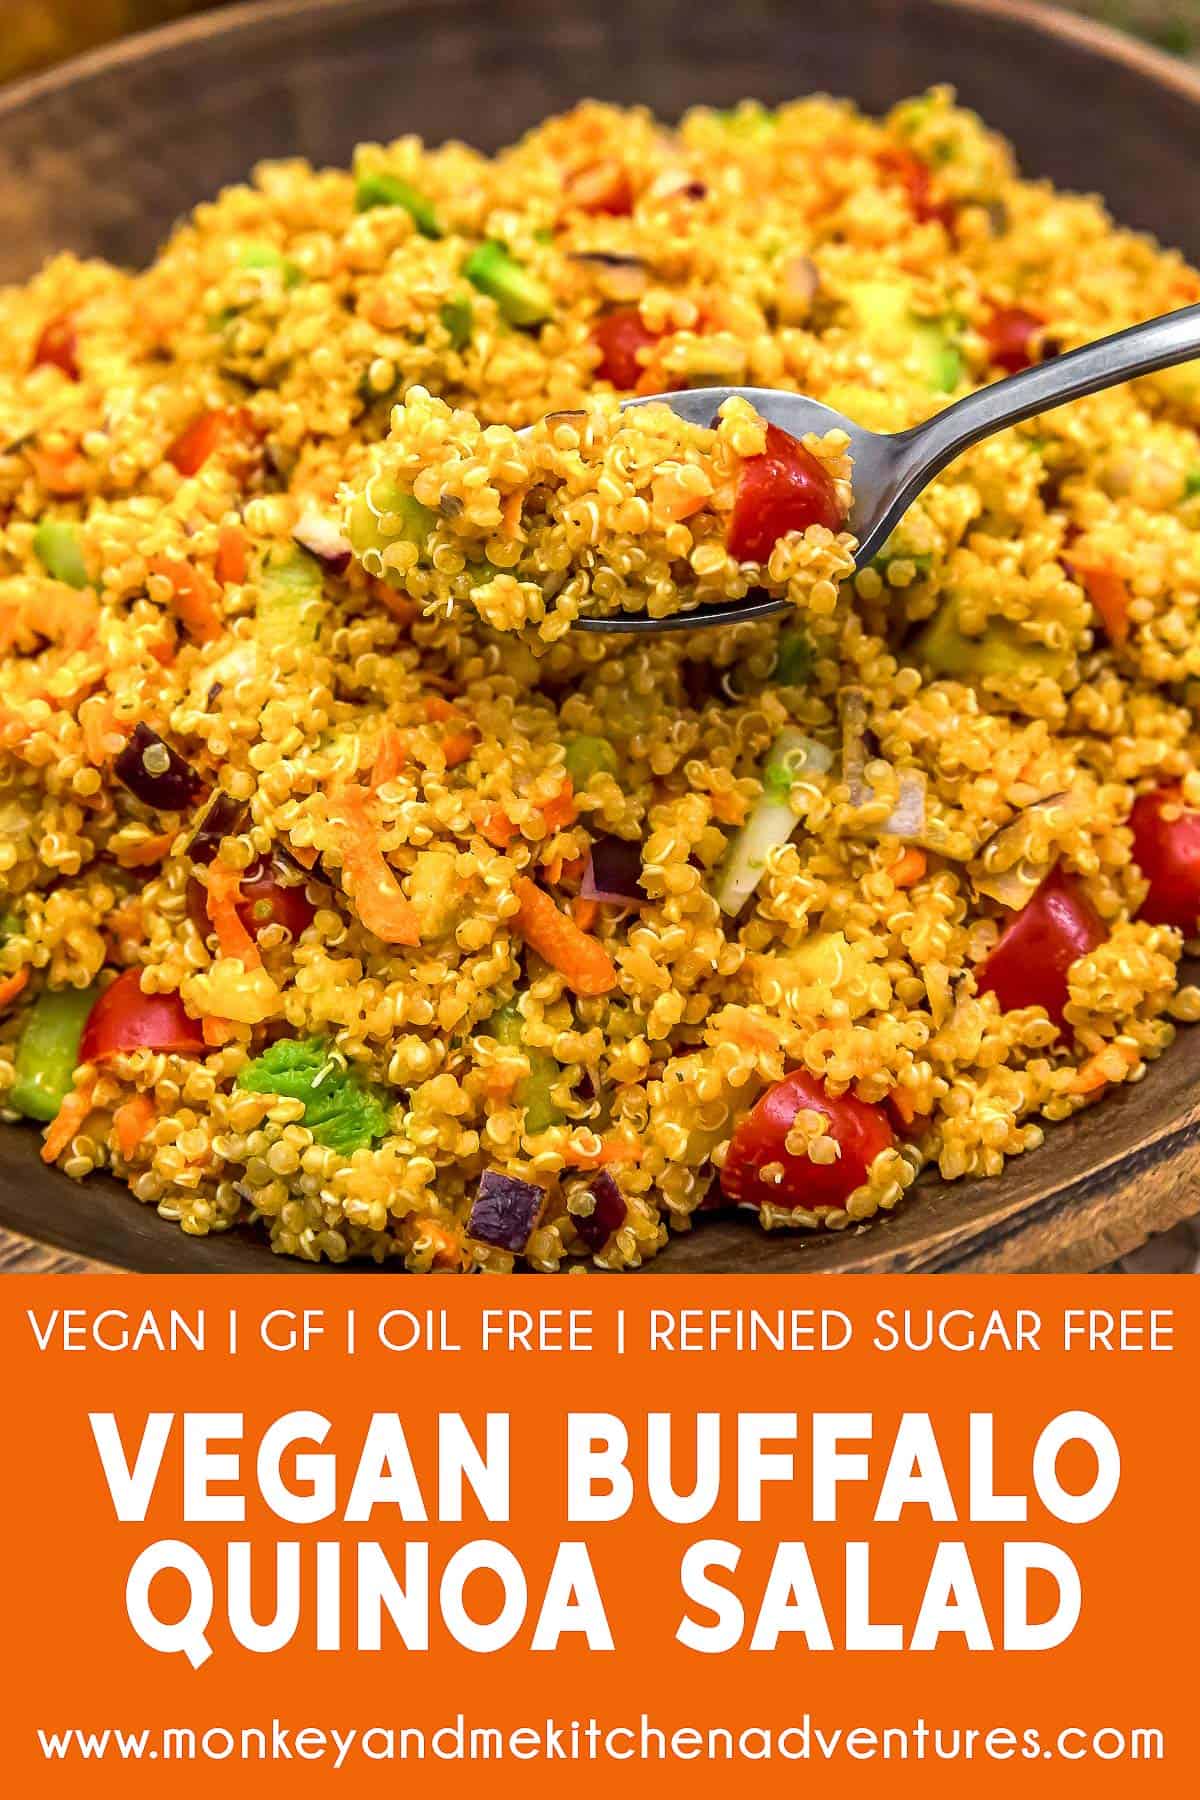 Vegan Buffalo Quinoa Salad with text description